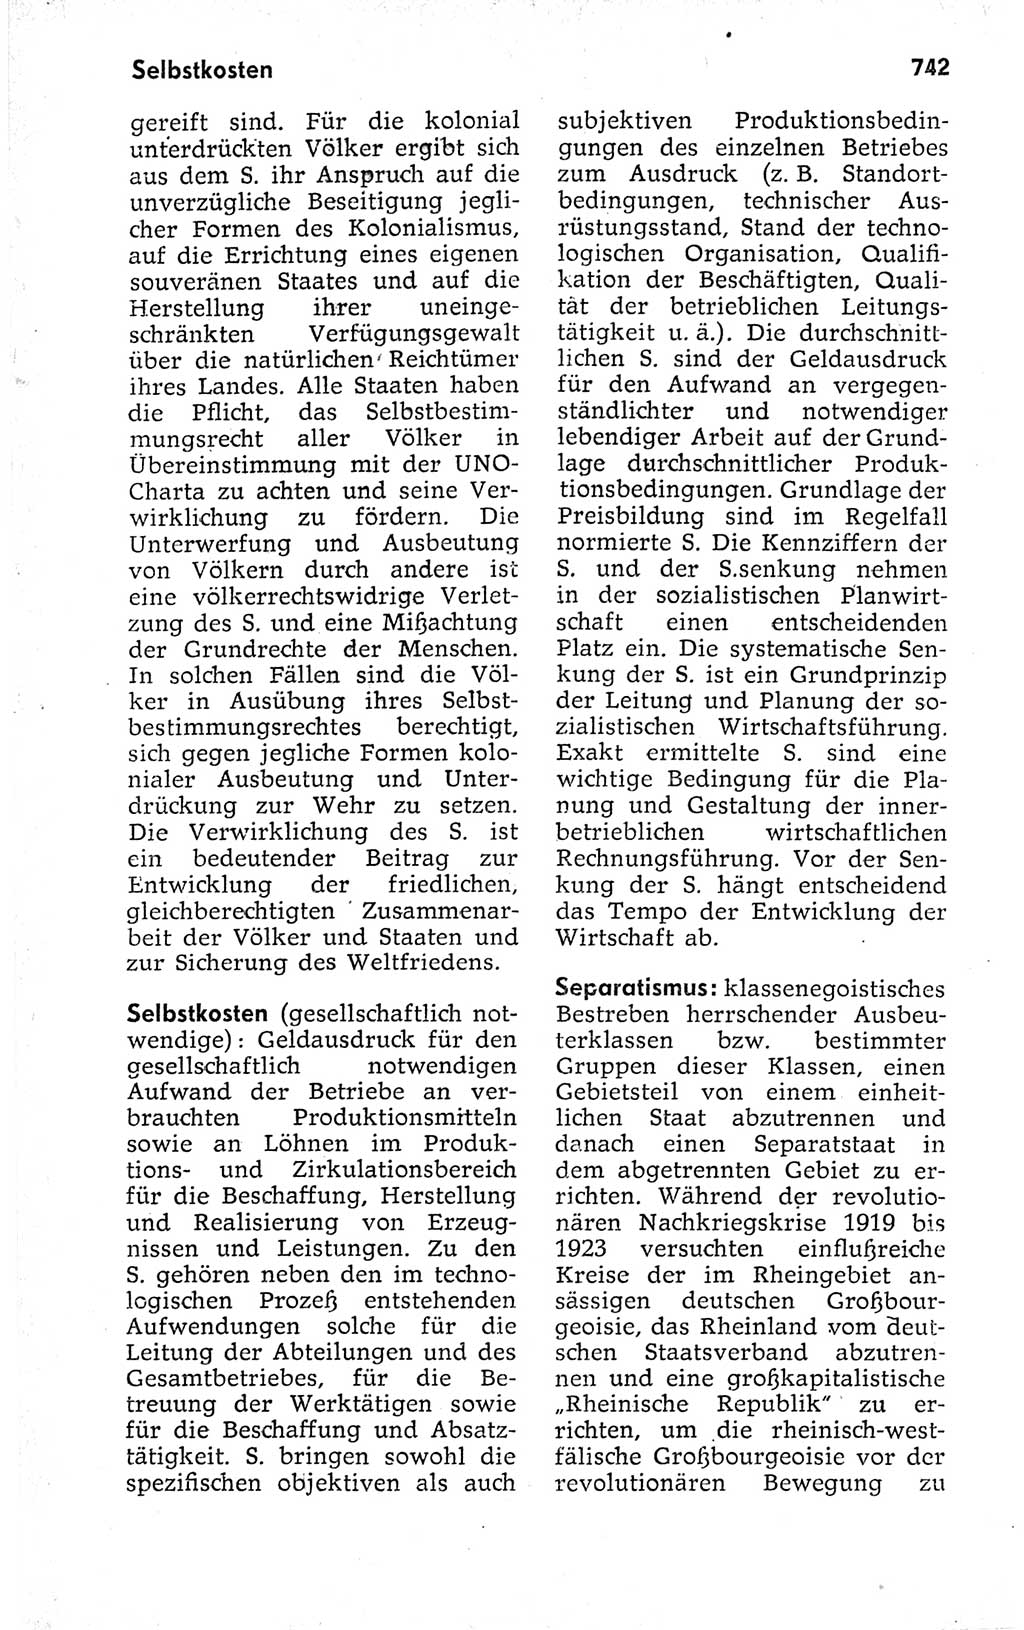 Kleines politisches Wörterbuch [Deutsche Demokratische Republik (DDR)] 1973, Seite 742 (Kl. pol. Wb. DDR 1973, S. 742)